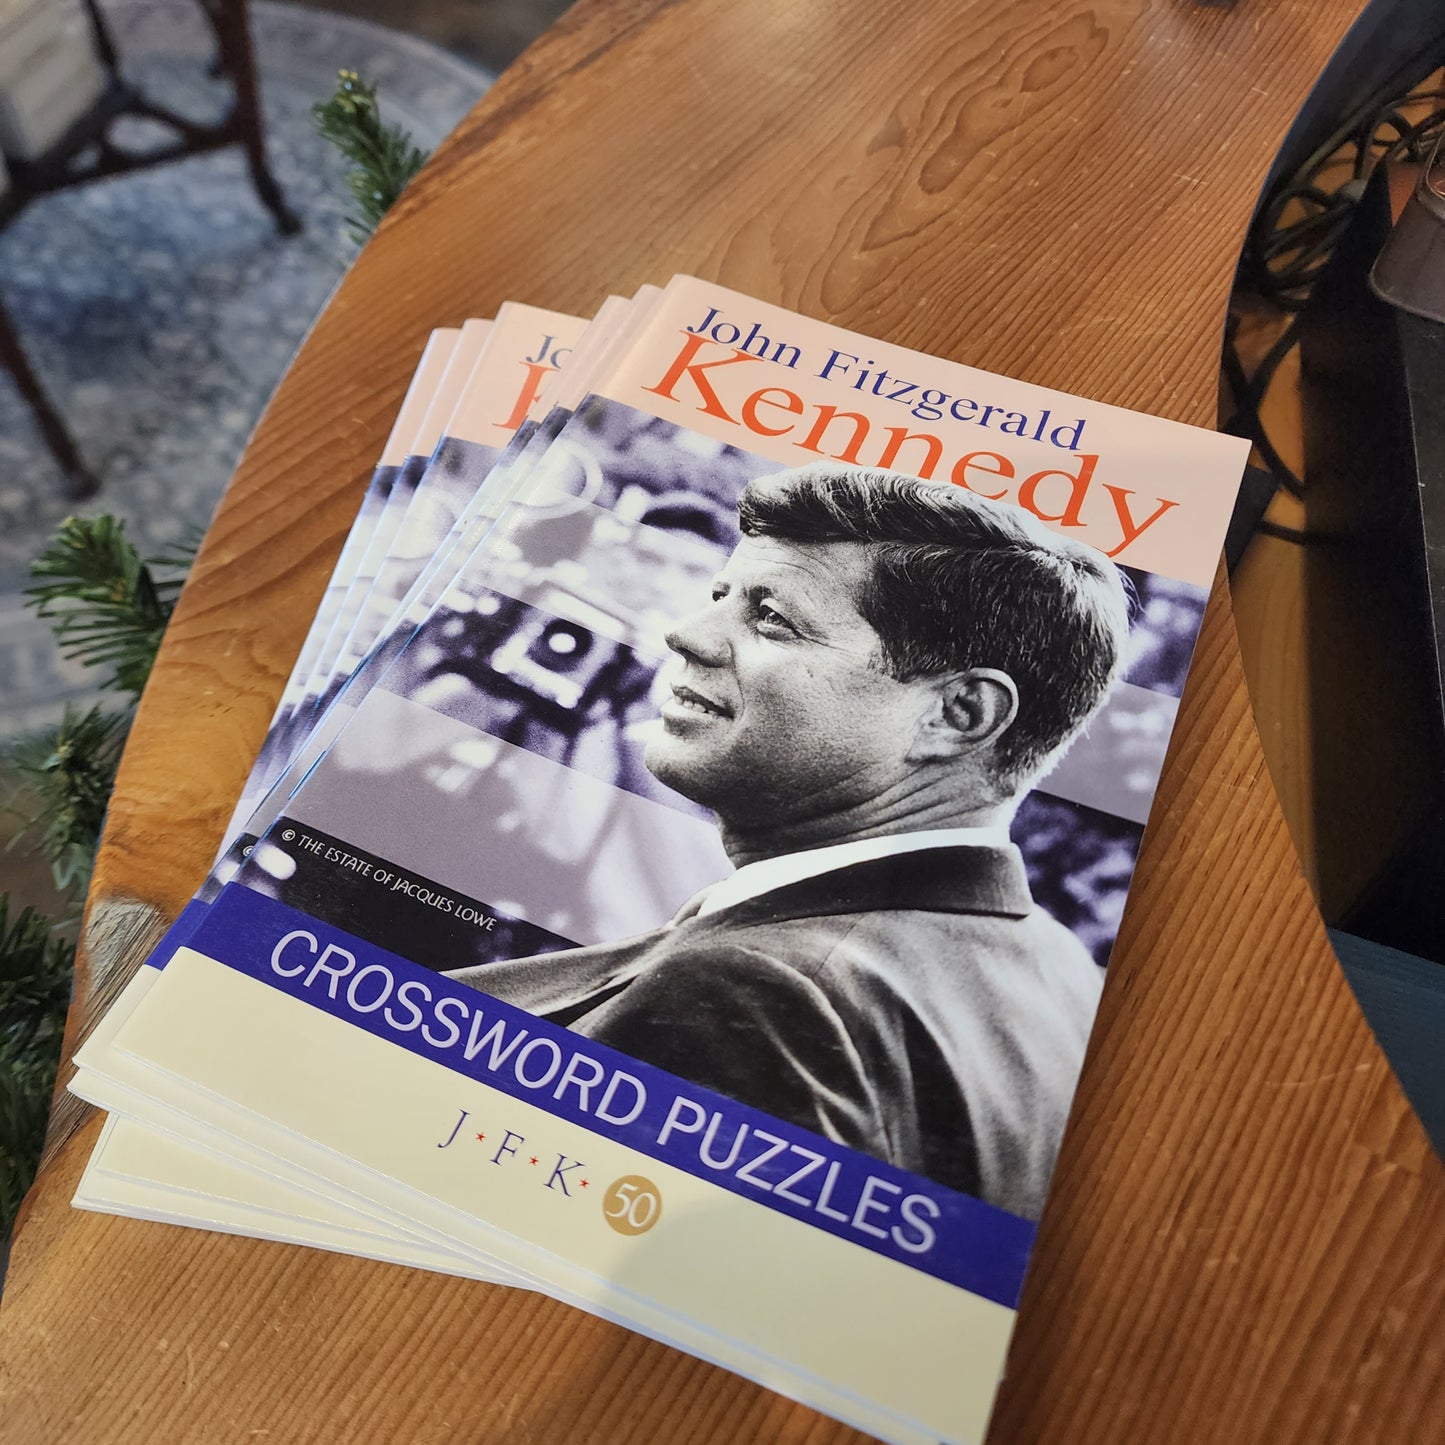 John F Kennedy Crosswords